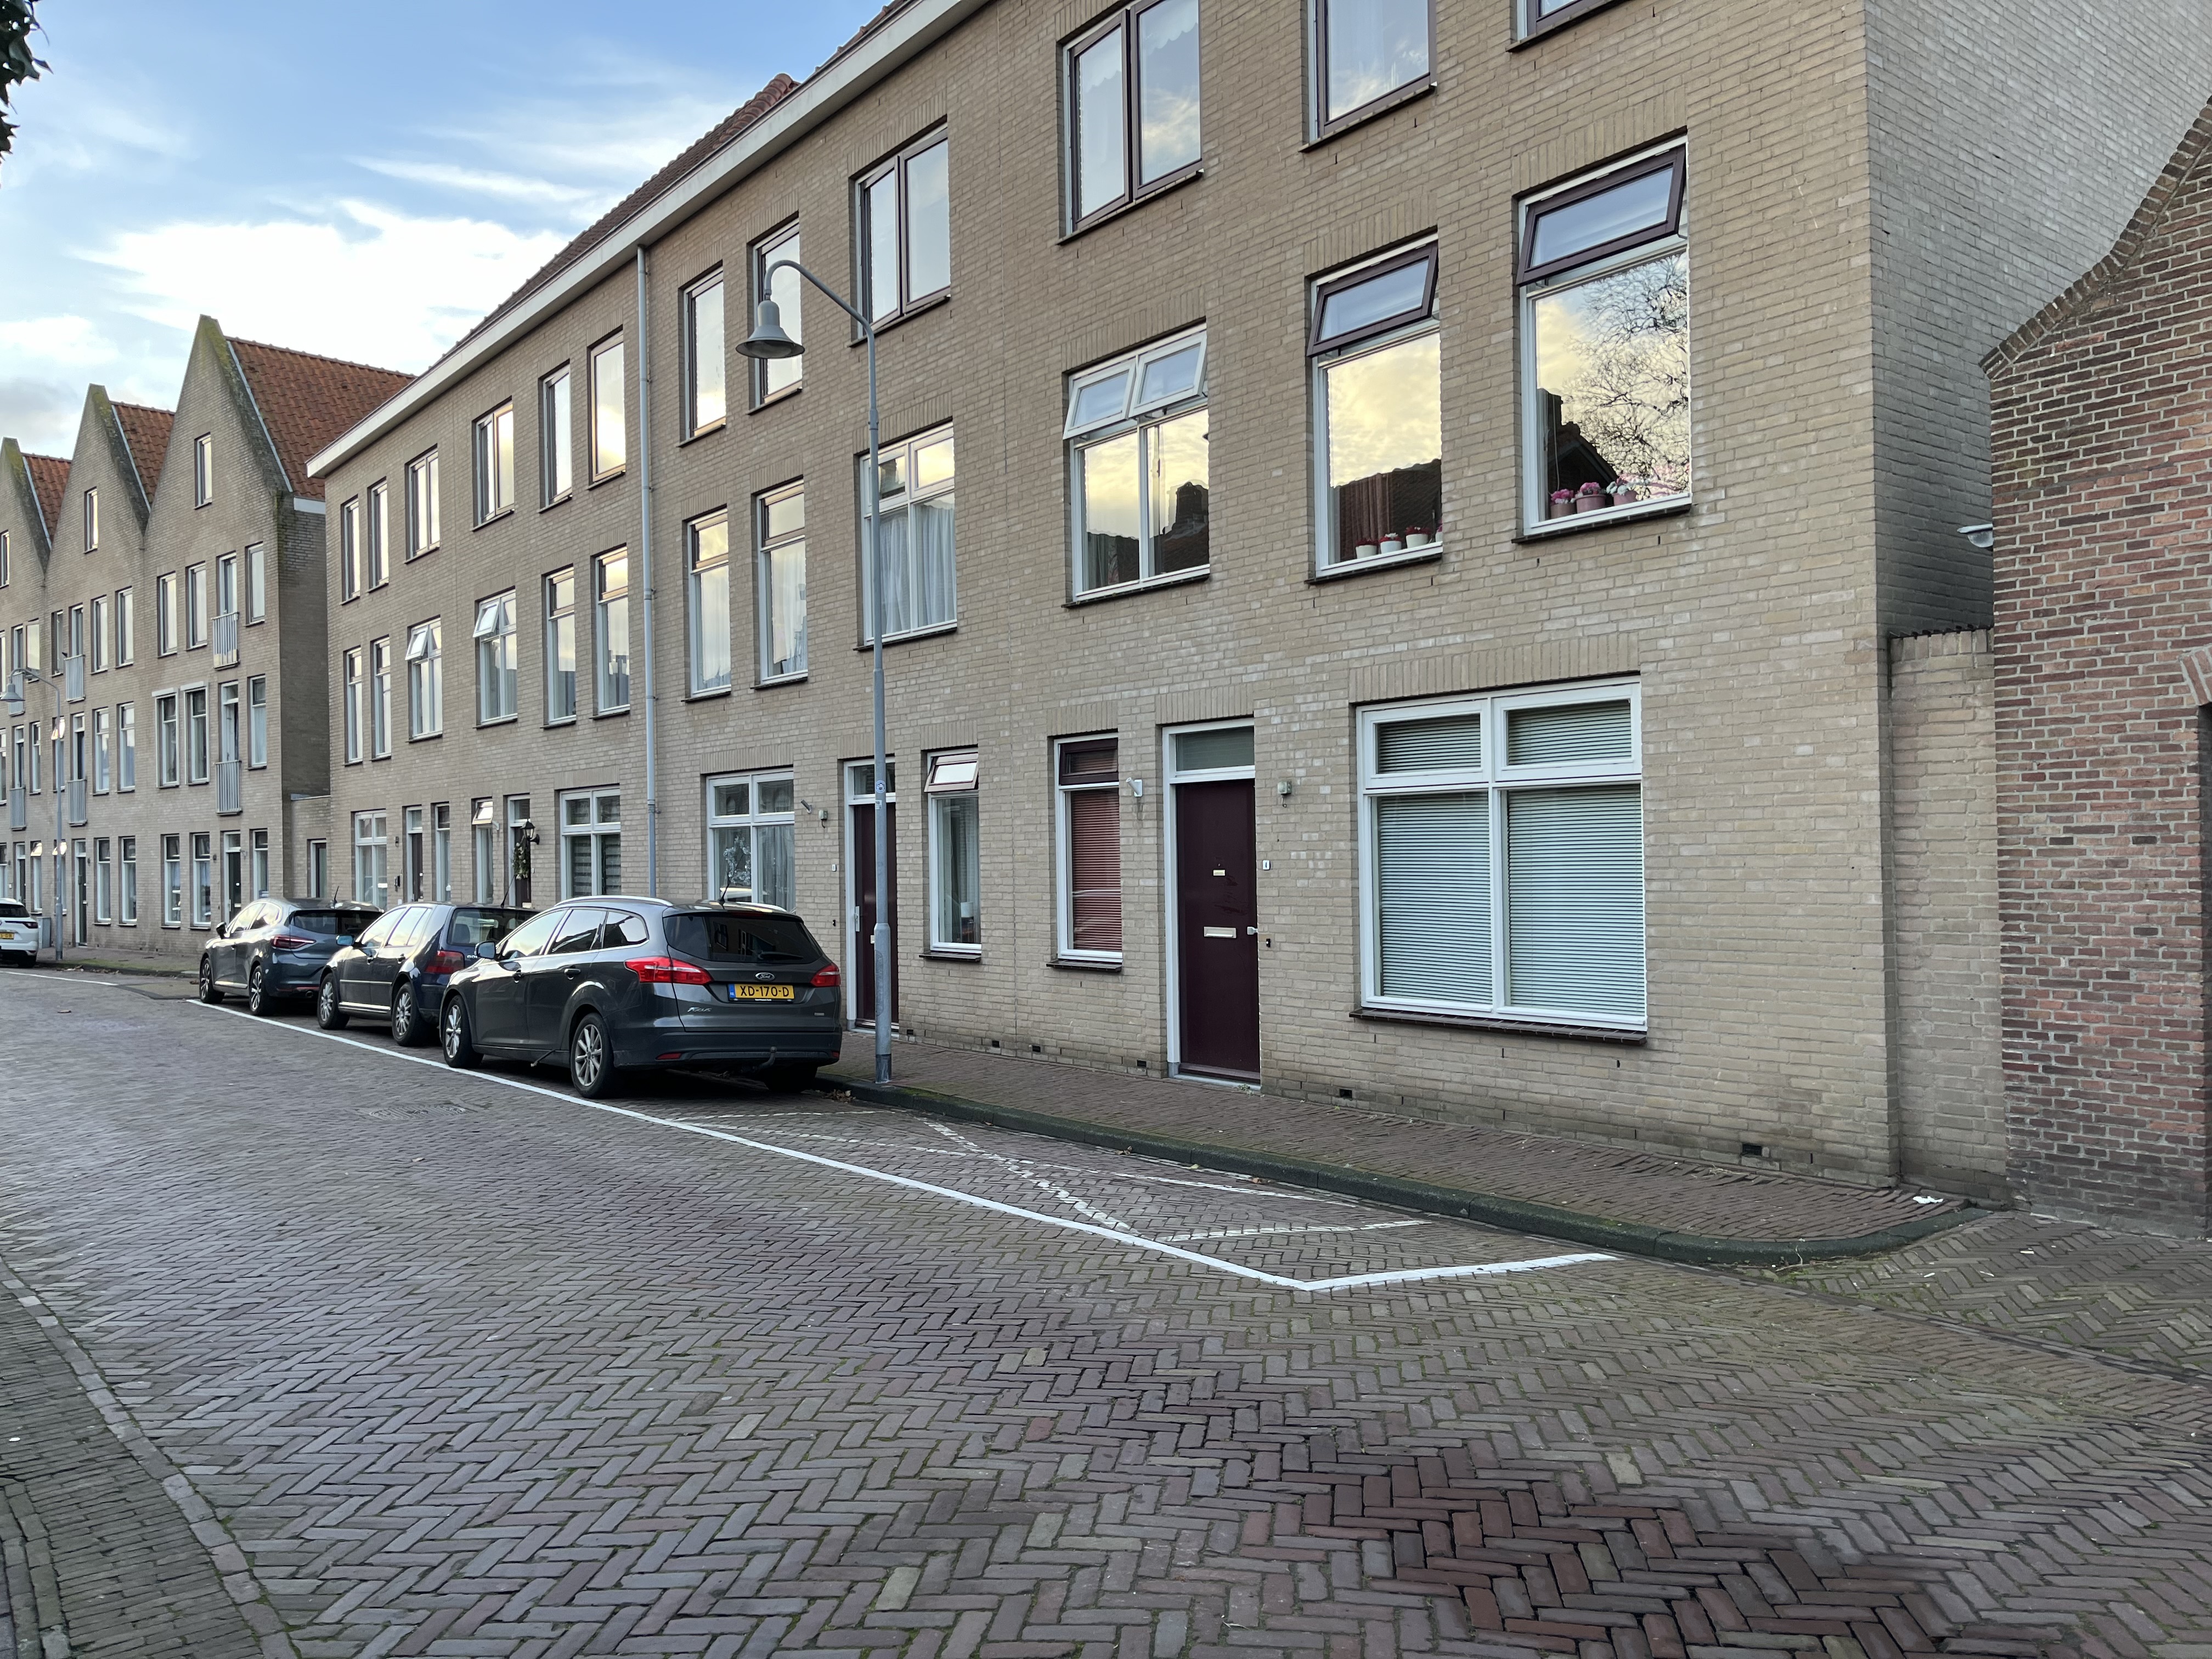 Manhuisstraat 4, 4301 BK Zierikzee, Nederland